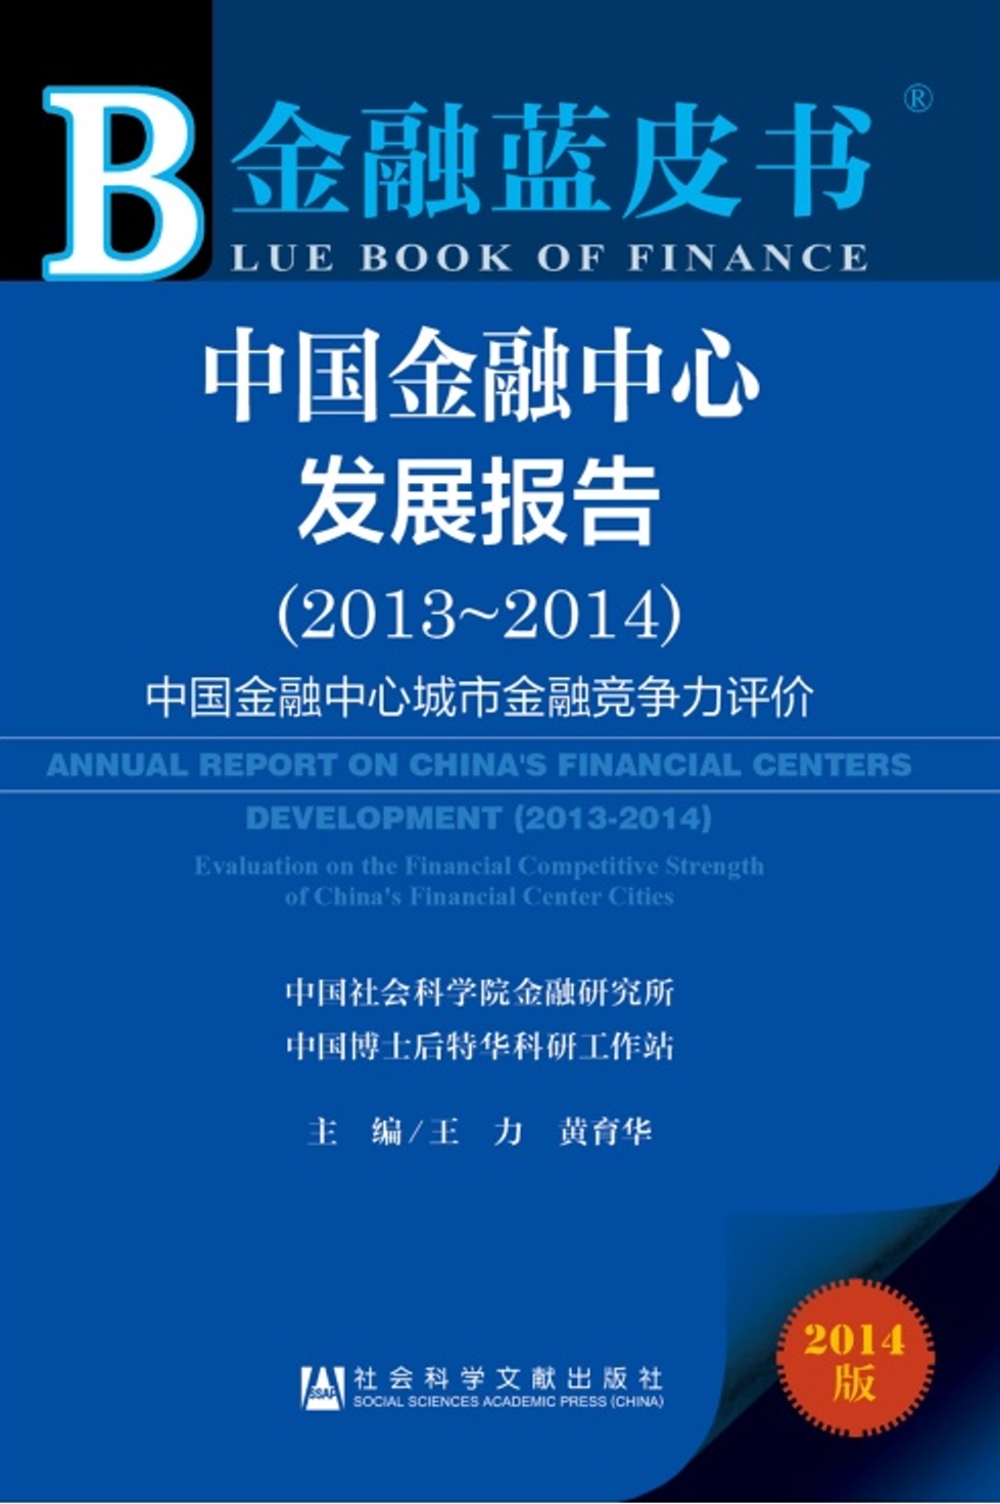 中國金融中心發展報告 2013-2014：中國金融中心城市金融競爭力評價